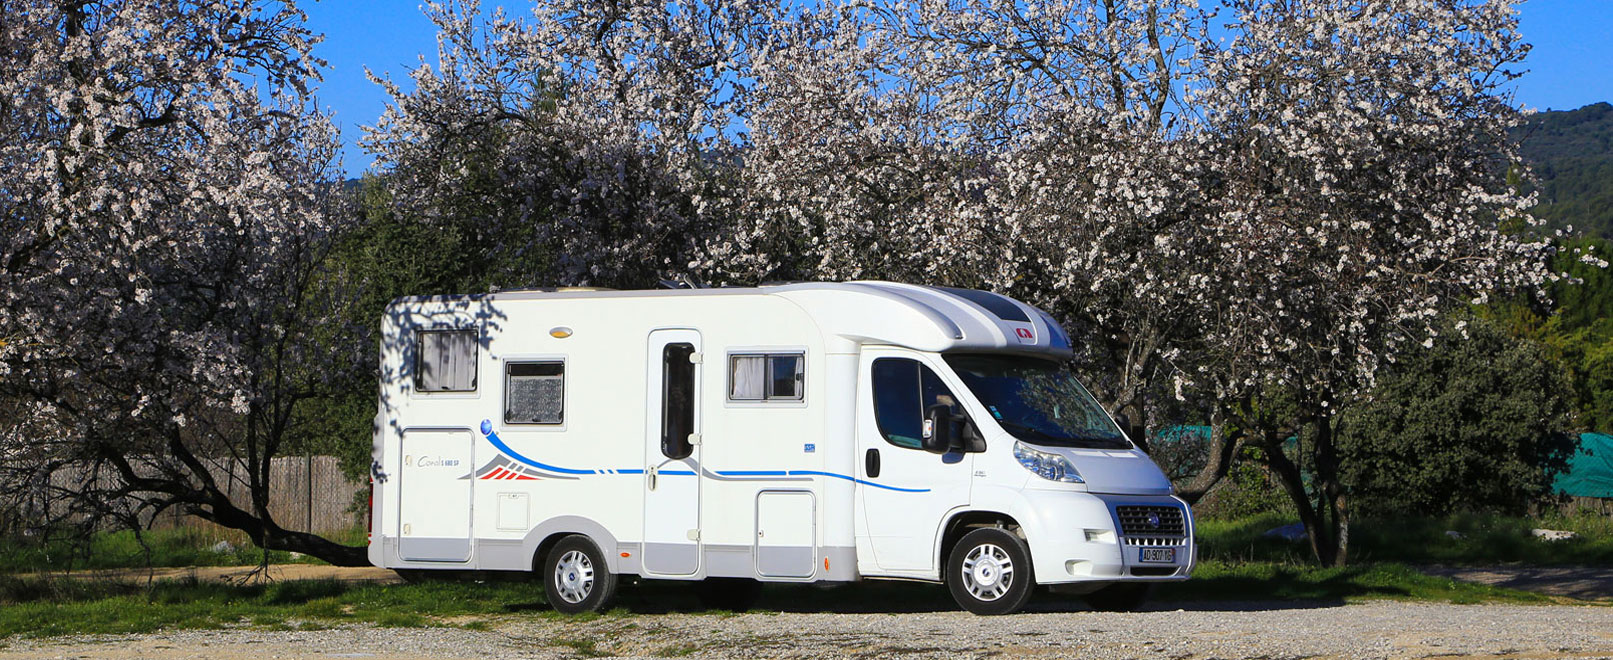 Aires de service pour camping-cars en Vaucluse